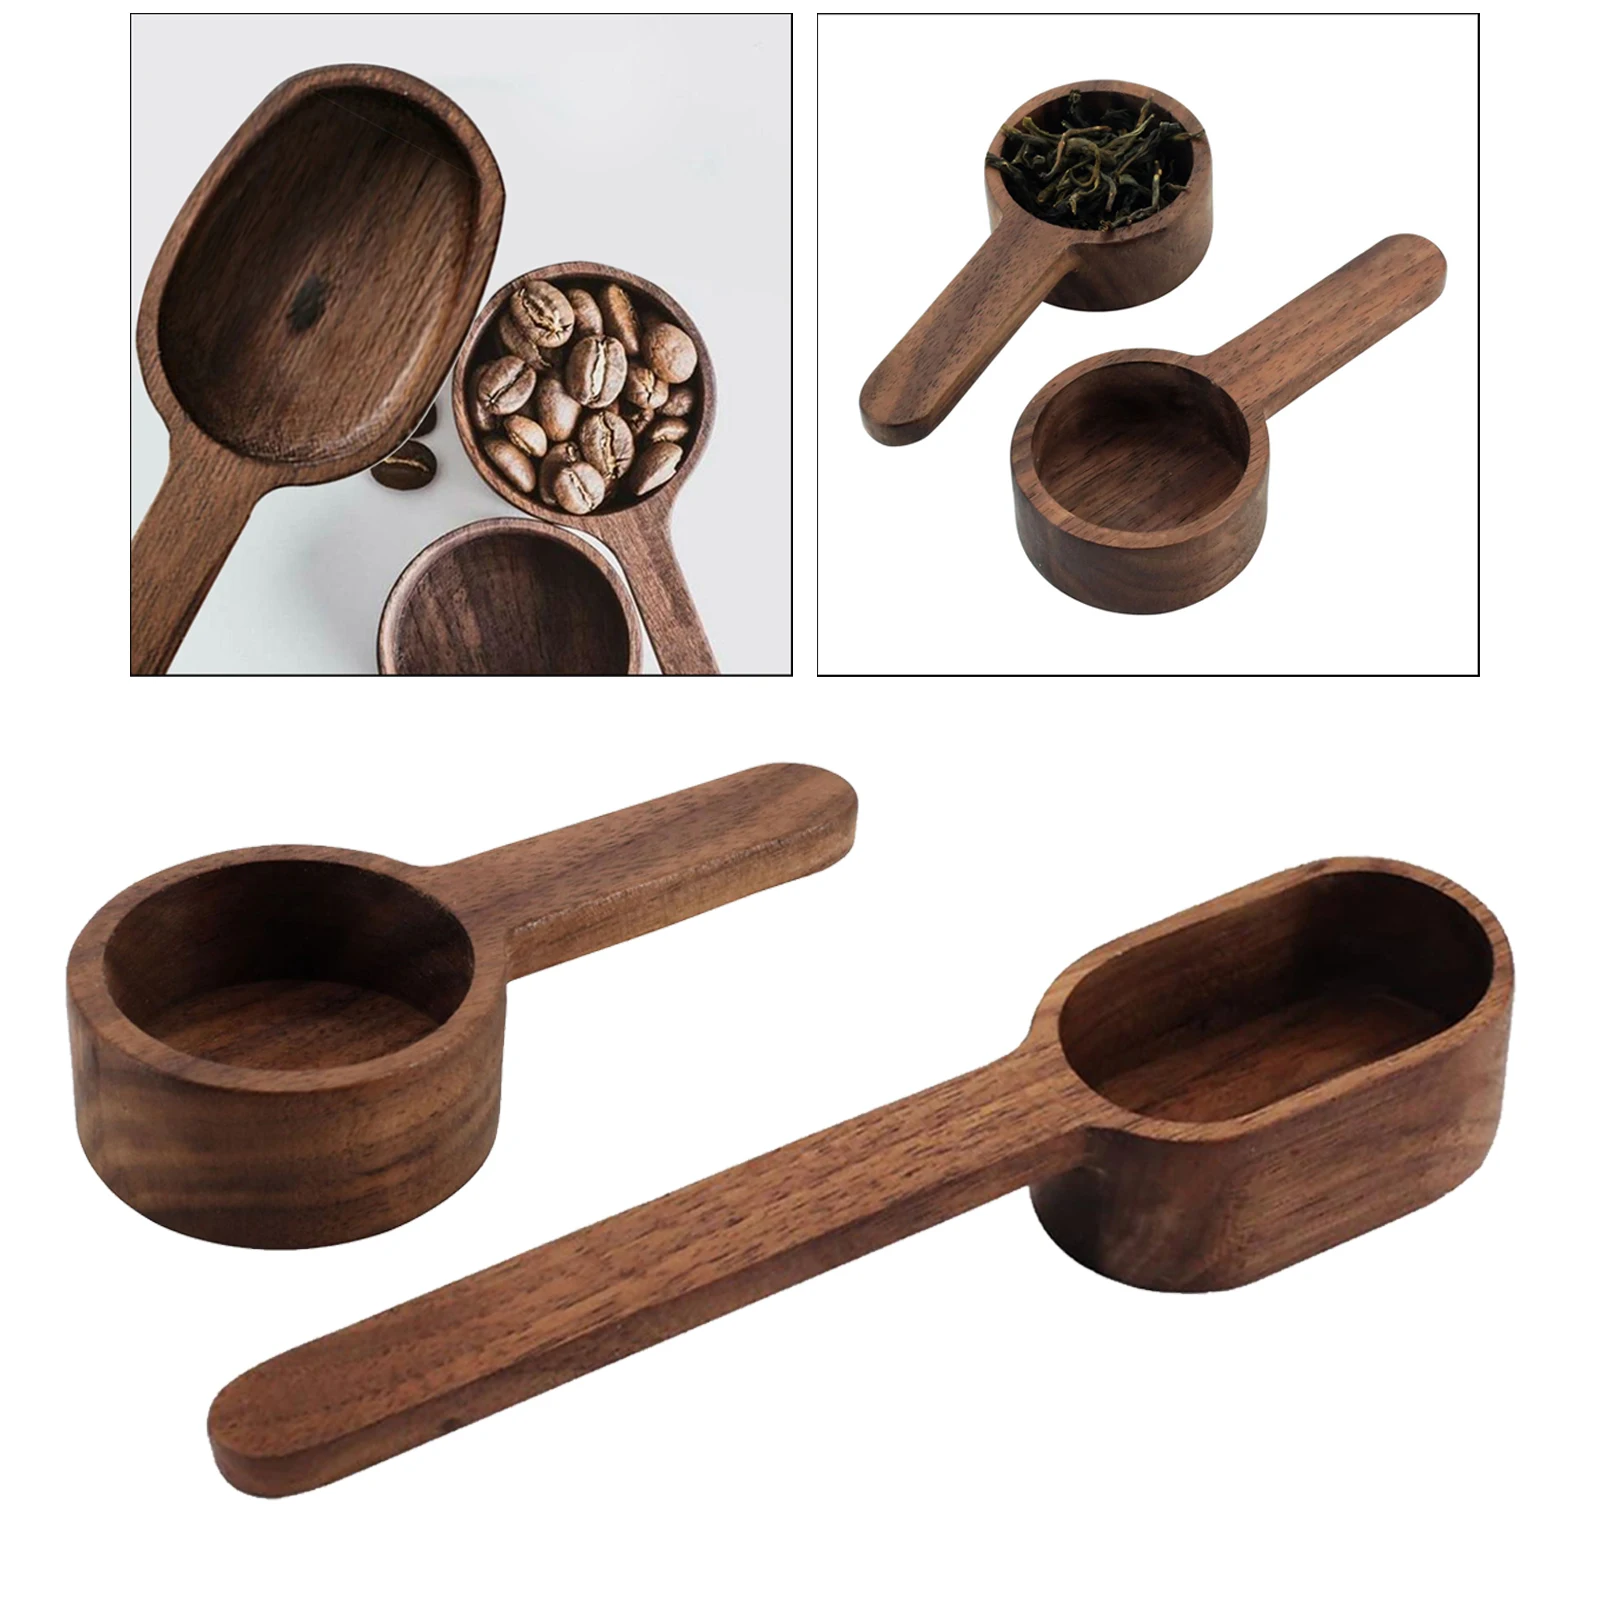 Wooden Measuring Spoons Wood Spoon Sugar Salt Measuring Scoop Baking Tools